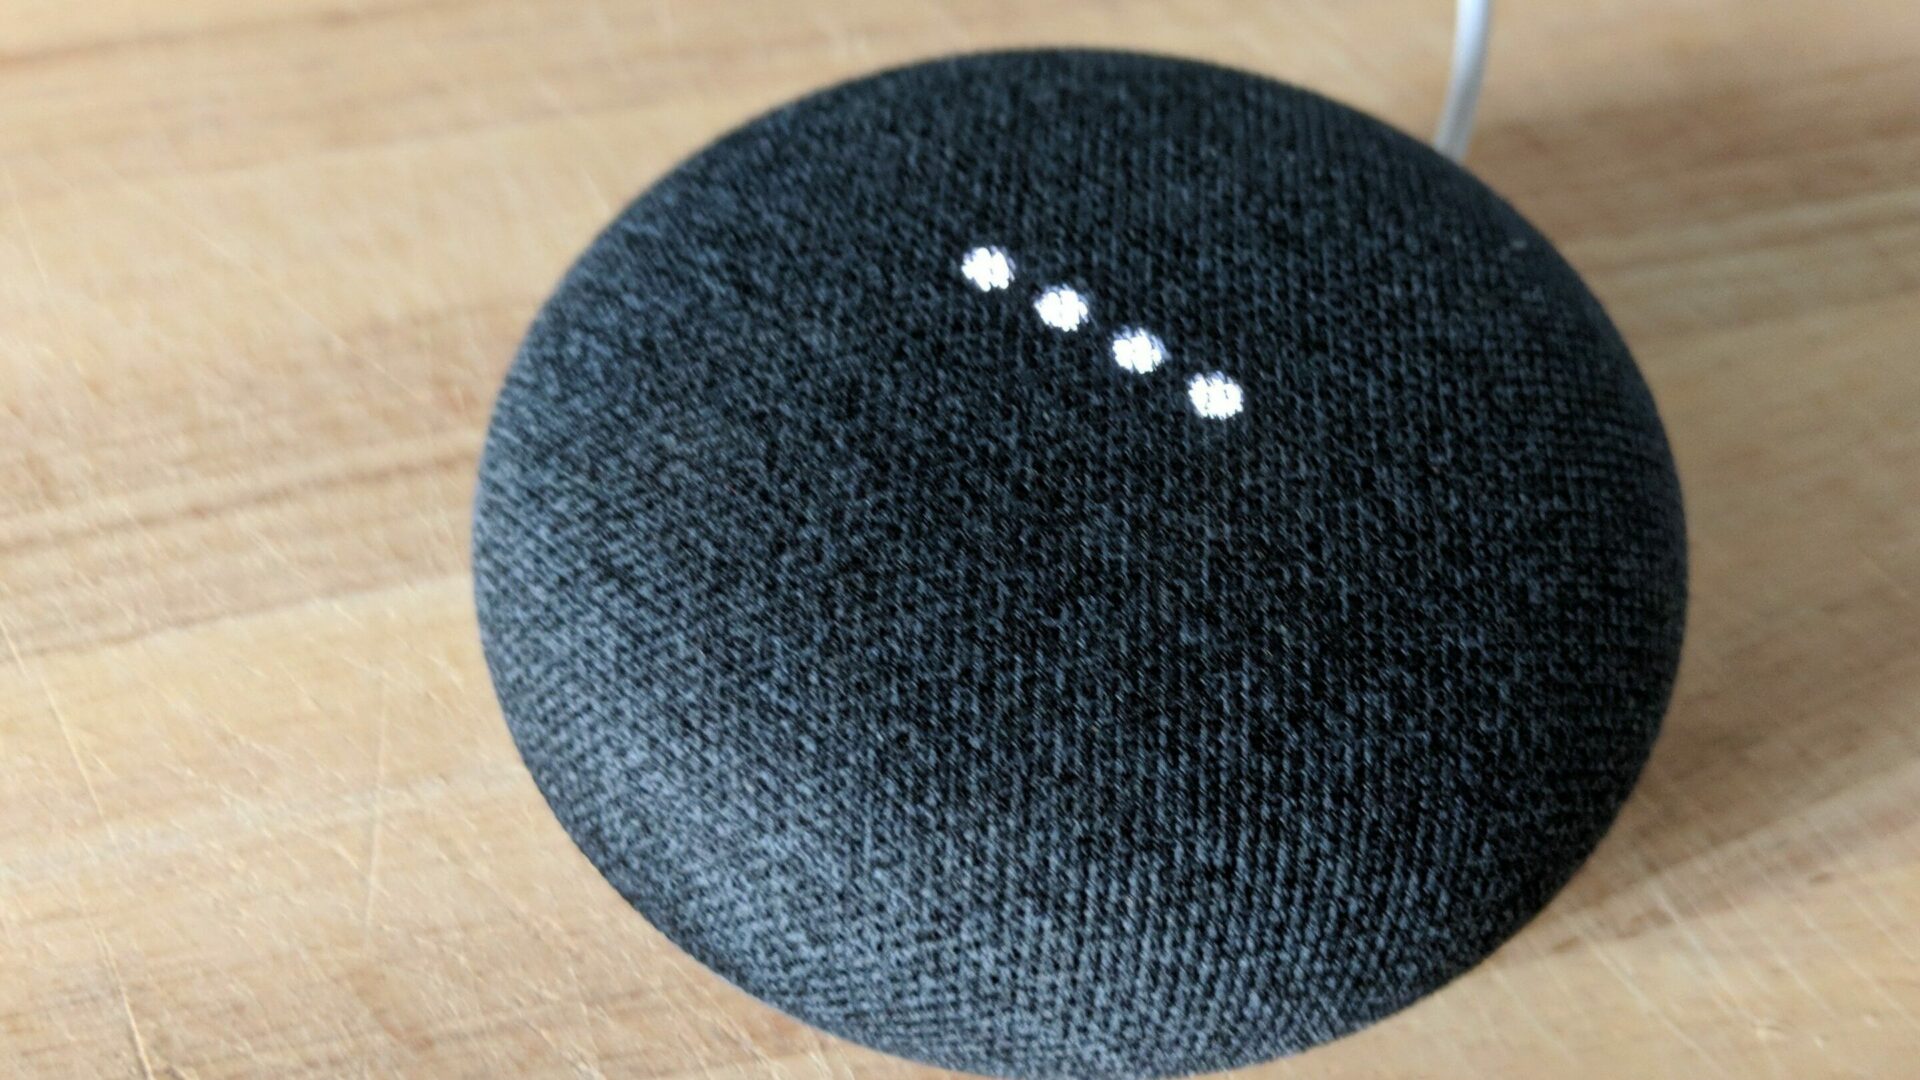 Stimme vom Google-Assistant umstellen